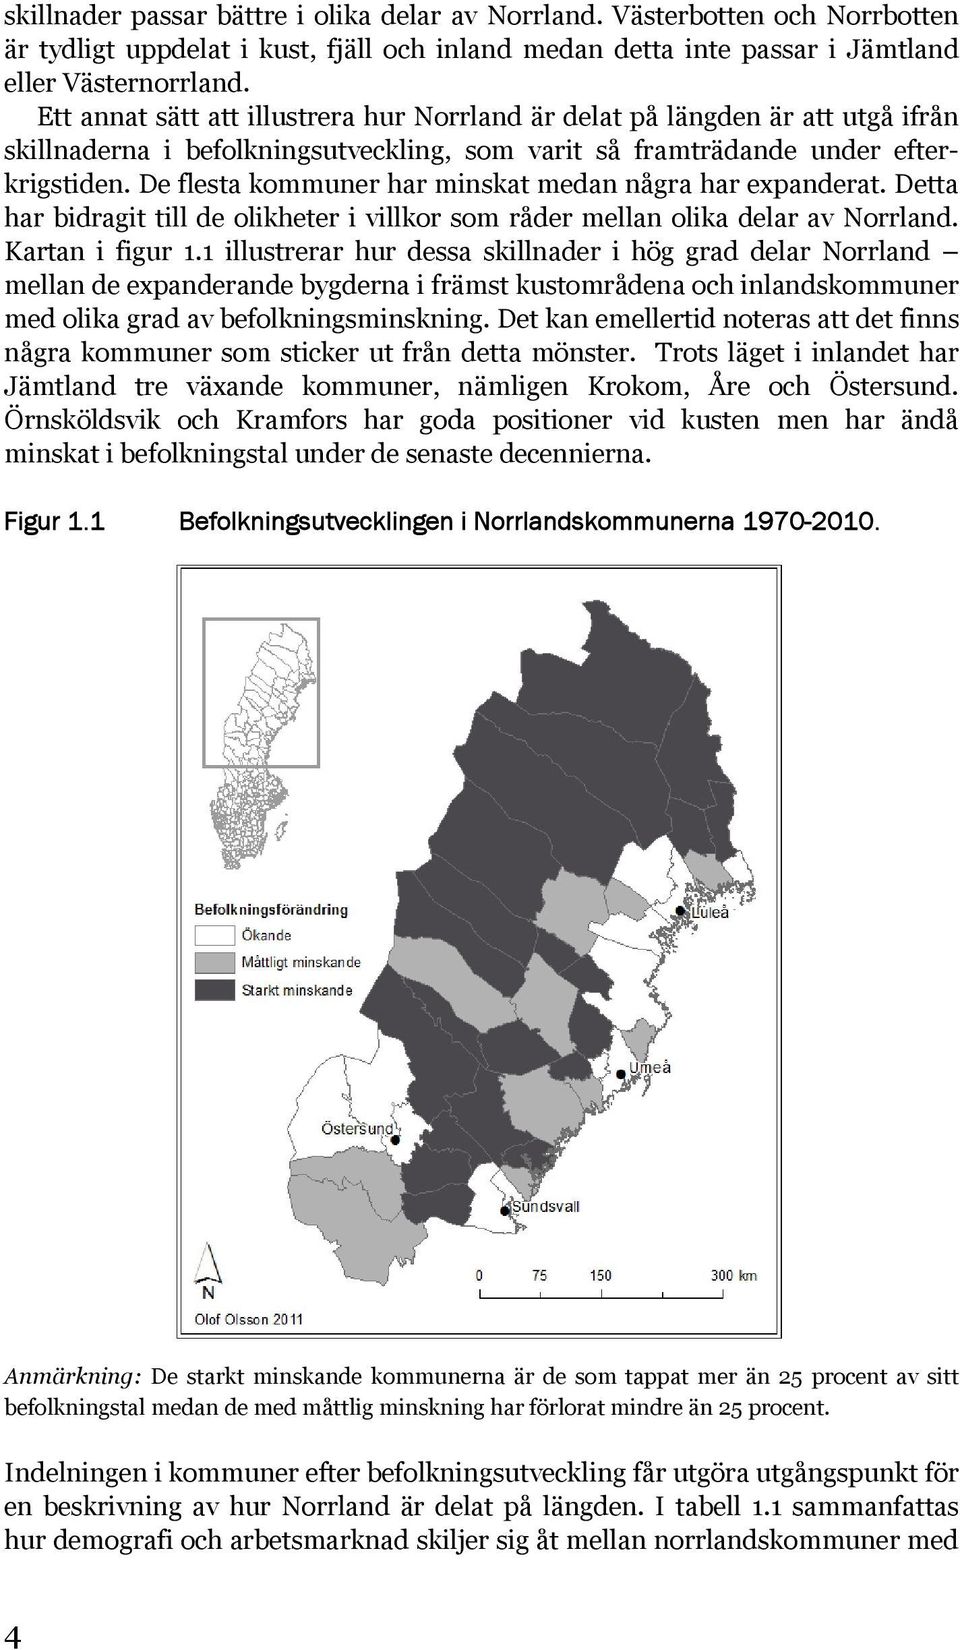 De flesta kommuner har minskat medan några har expanderat. Detta har bidragit till de olikheter i villkor som råder mellan olika delar av Norrland. Kartan i figur 1.